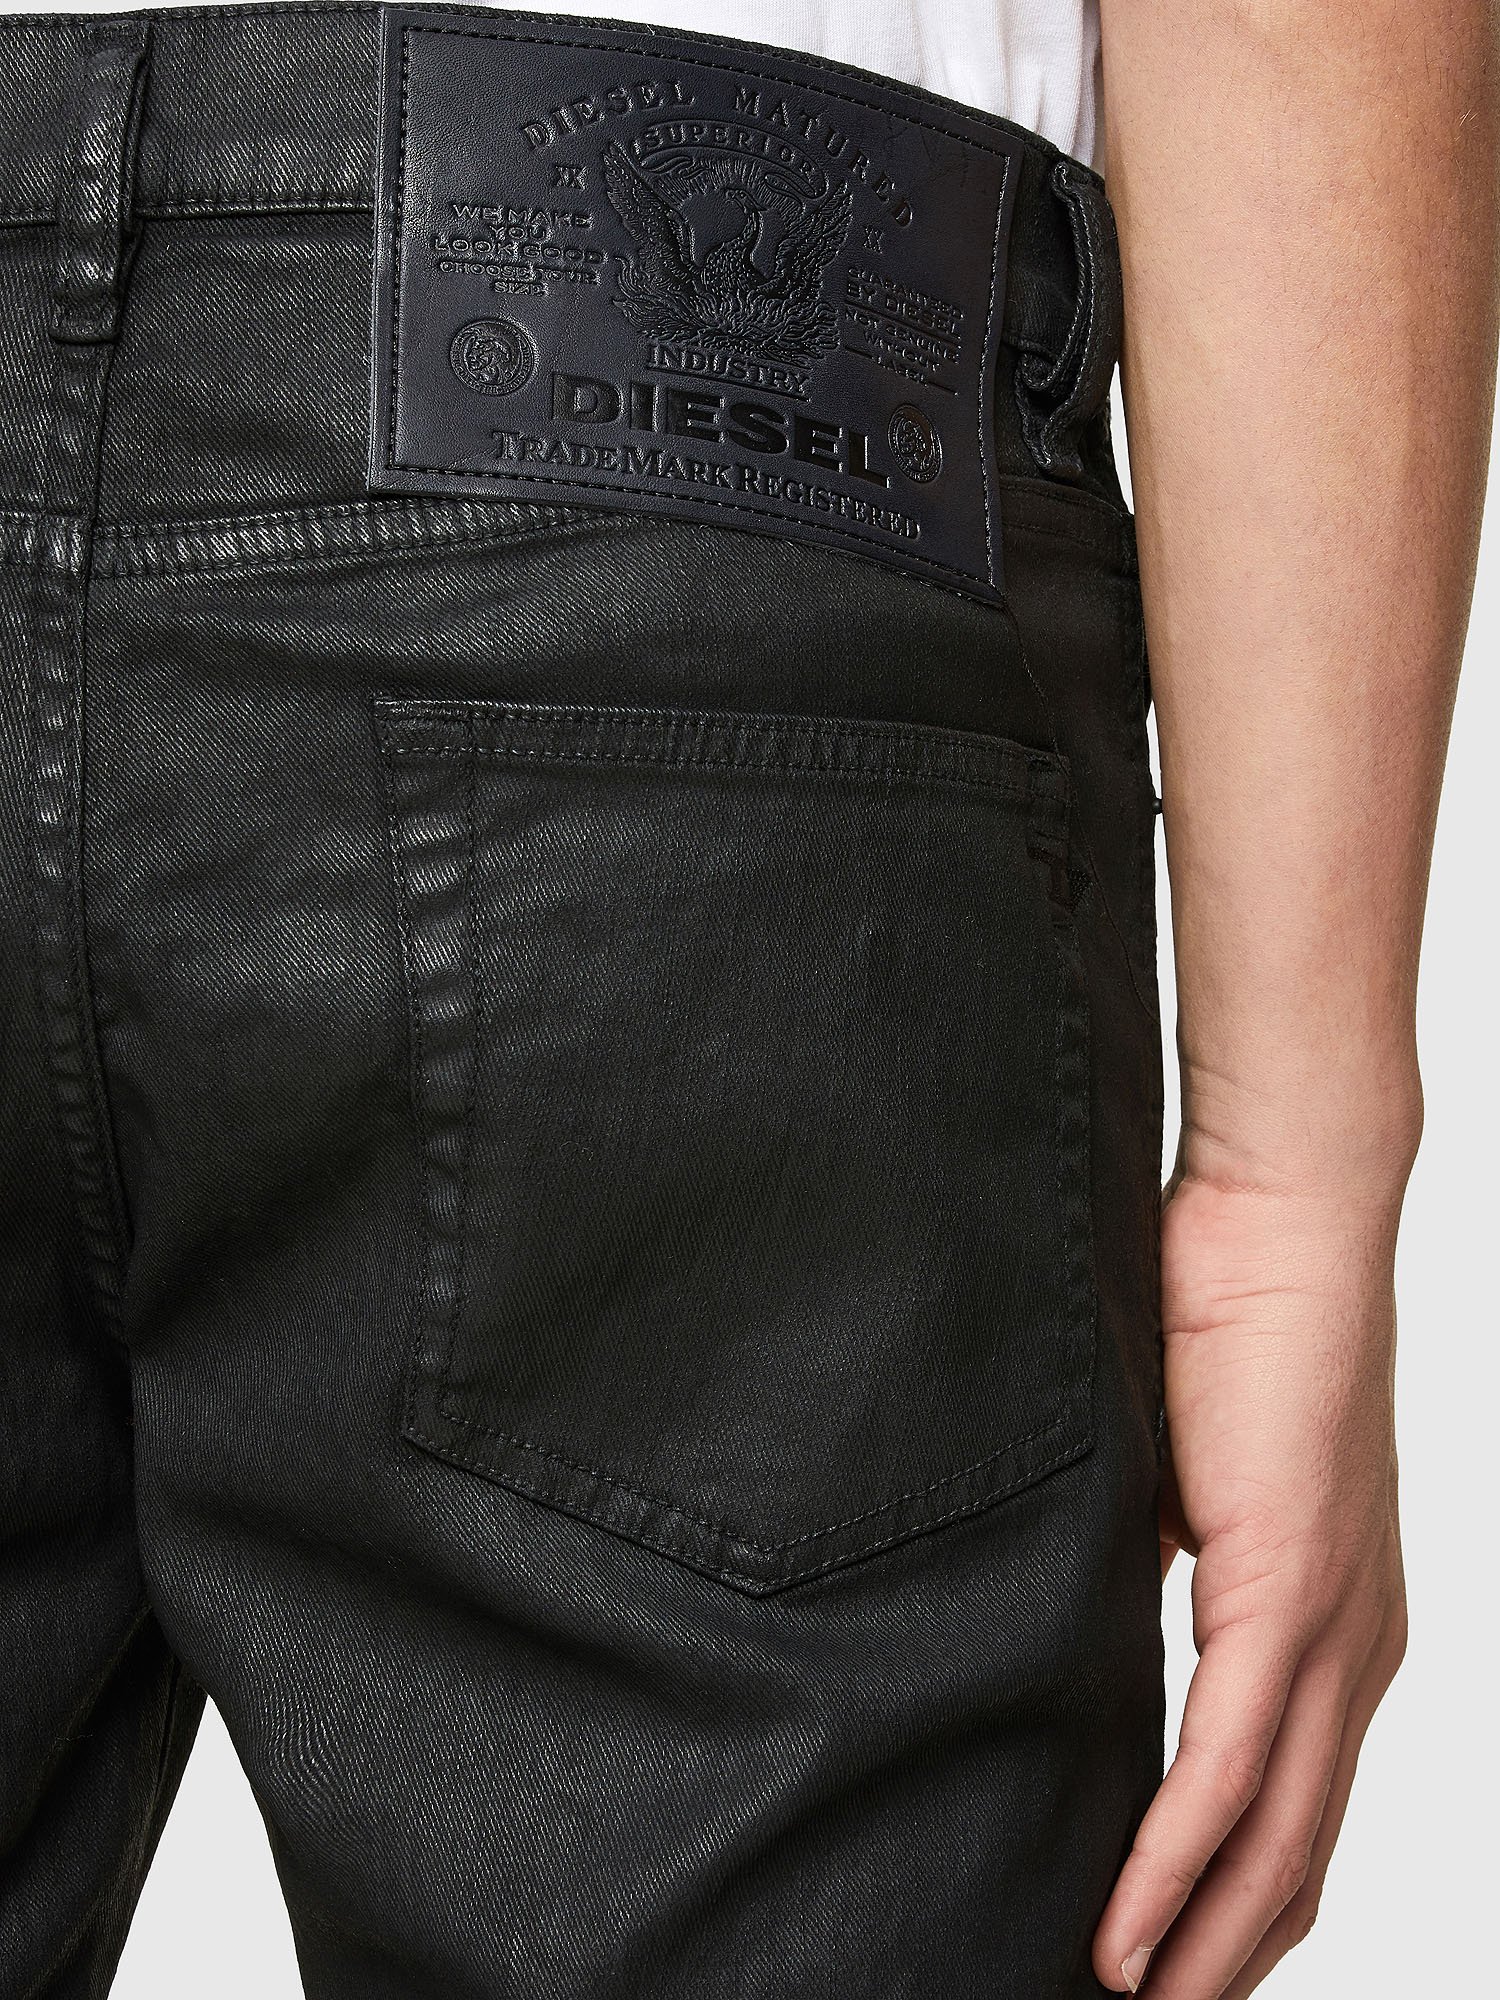 Men's Slim Jeans | Diesel® Official Online Store